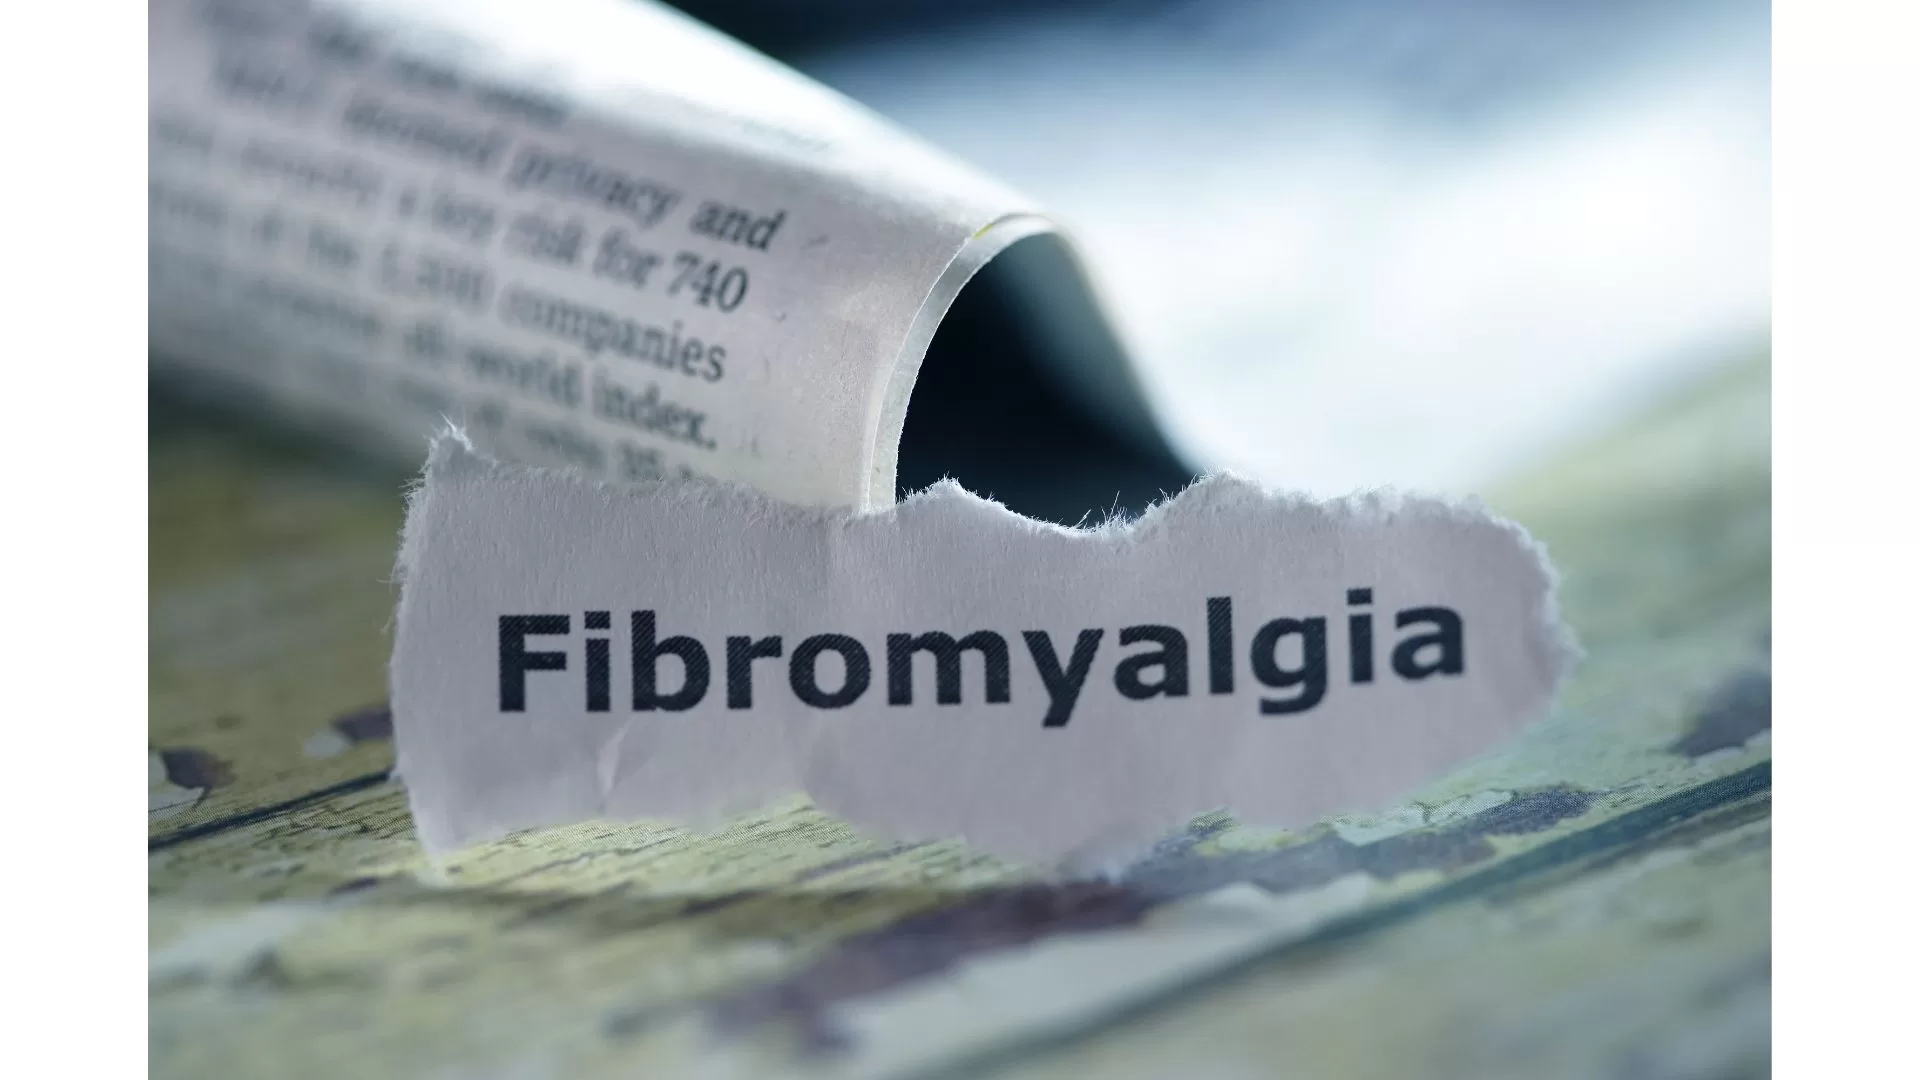 Lactic Acidosis and Fibromyalgia